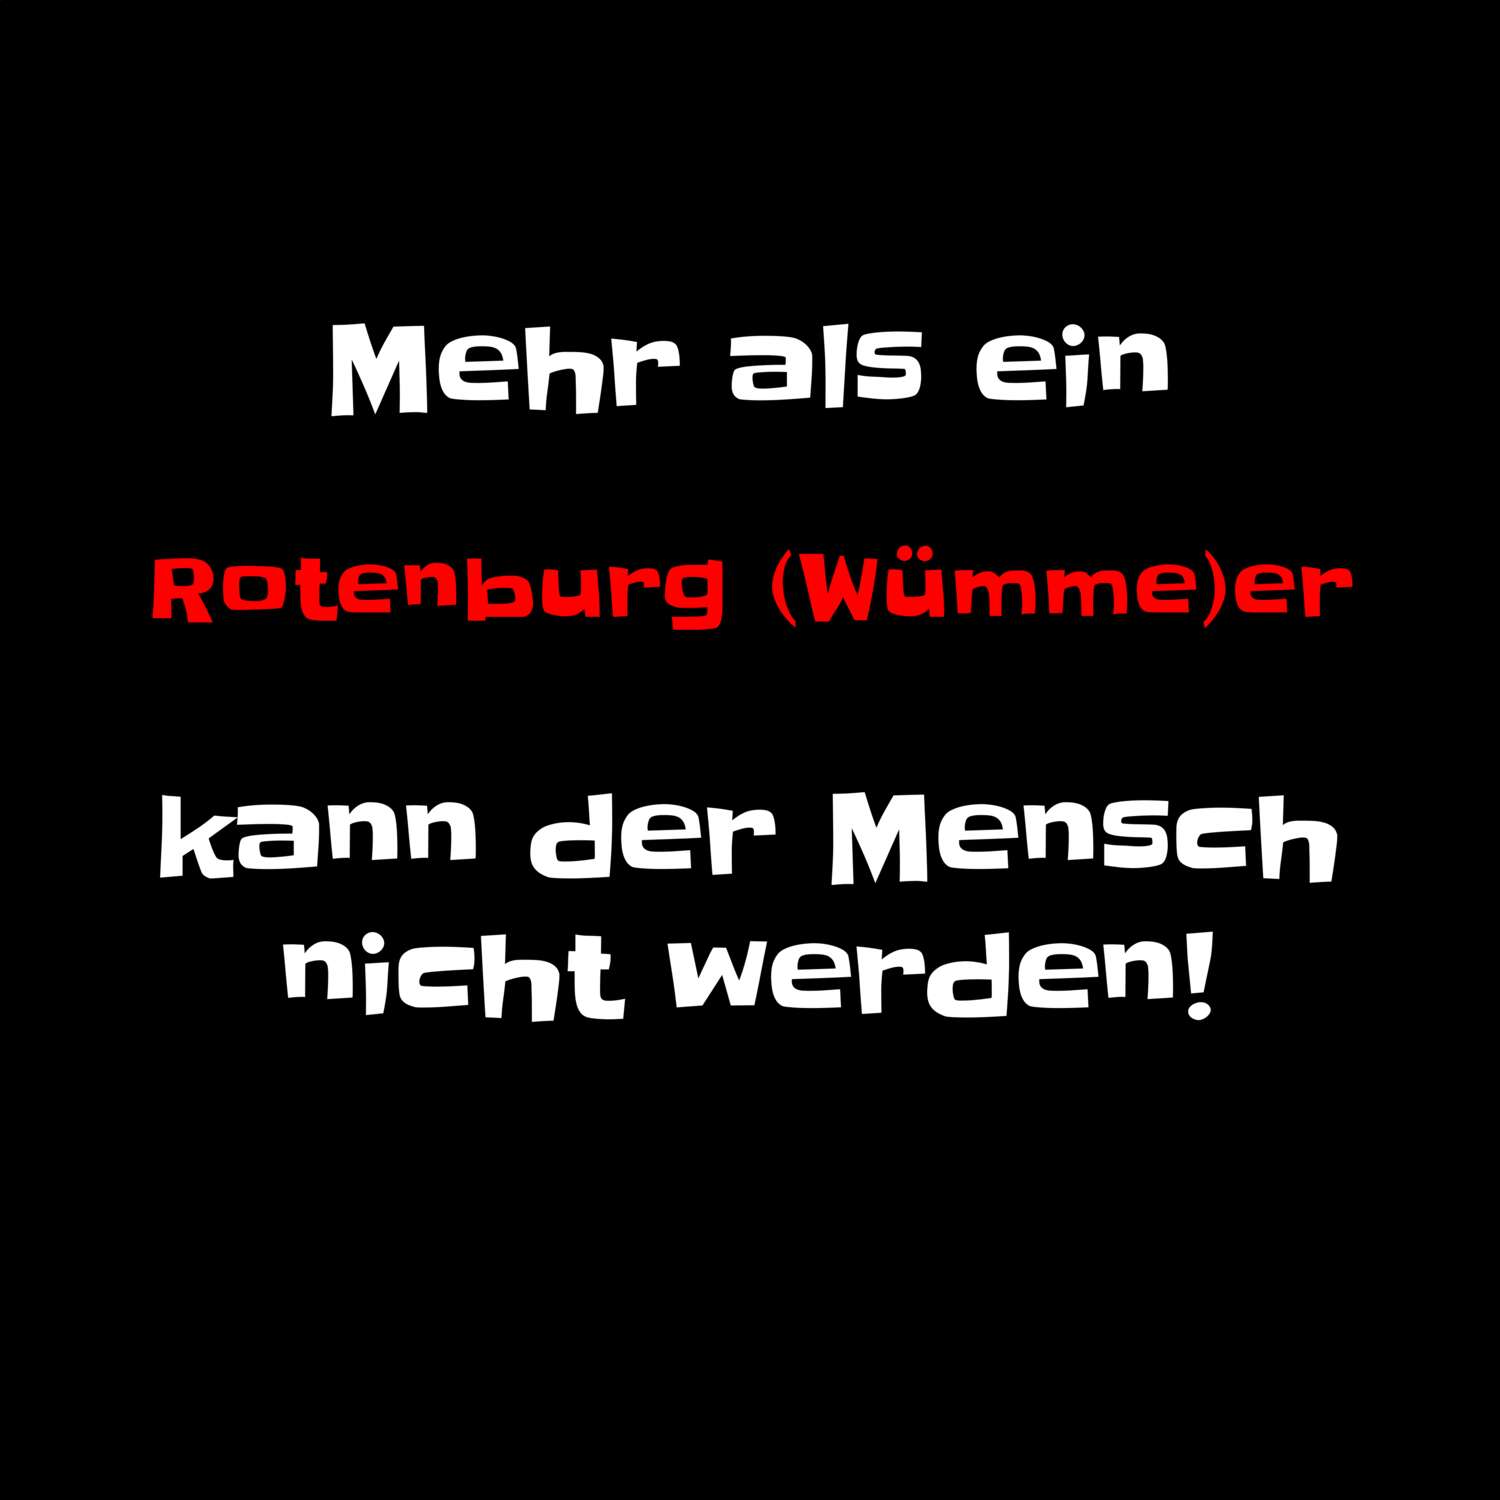 Rotenburg (Wümme) T-Shirt »Mehr als ein«